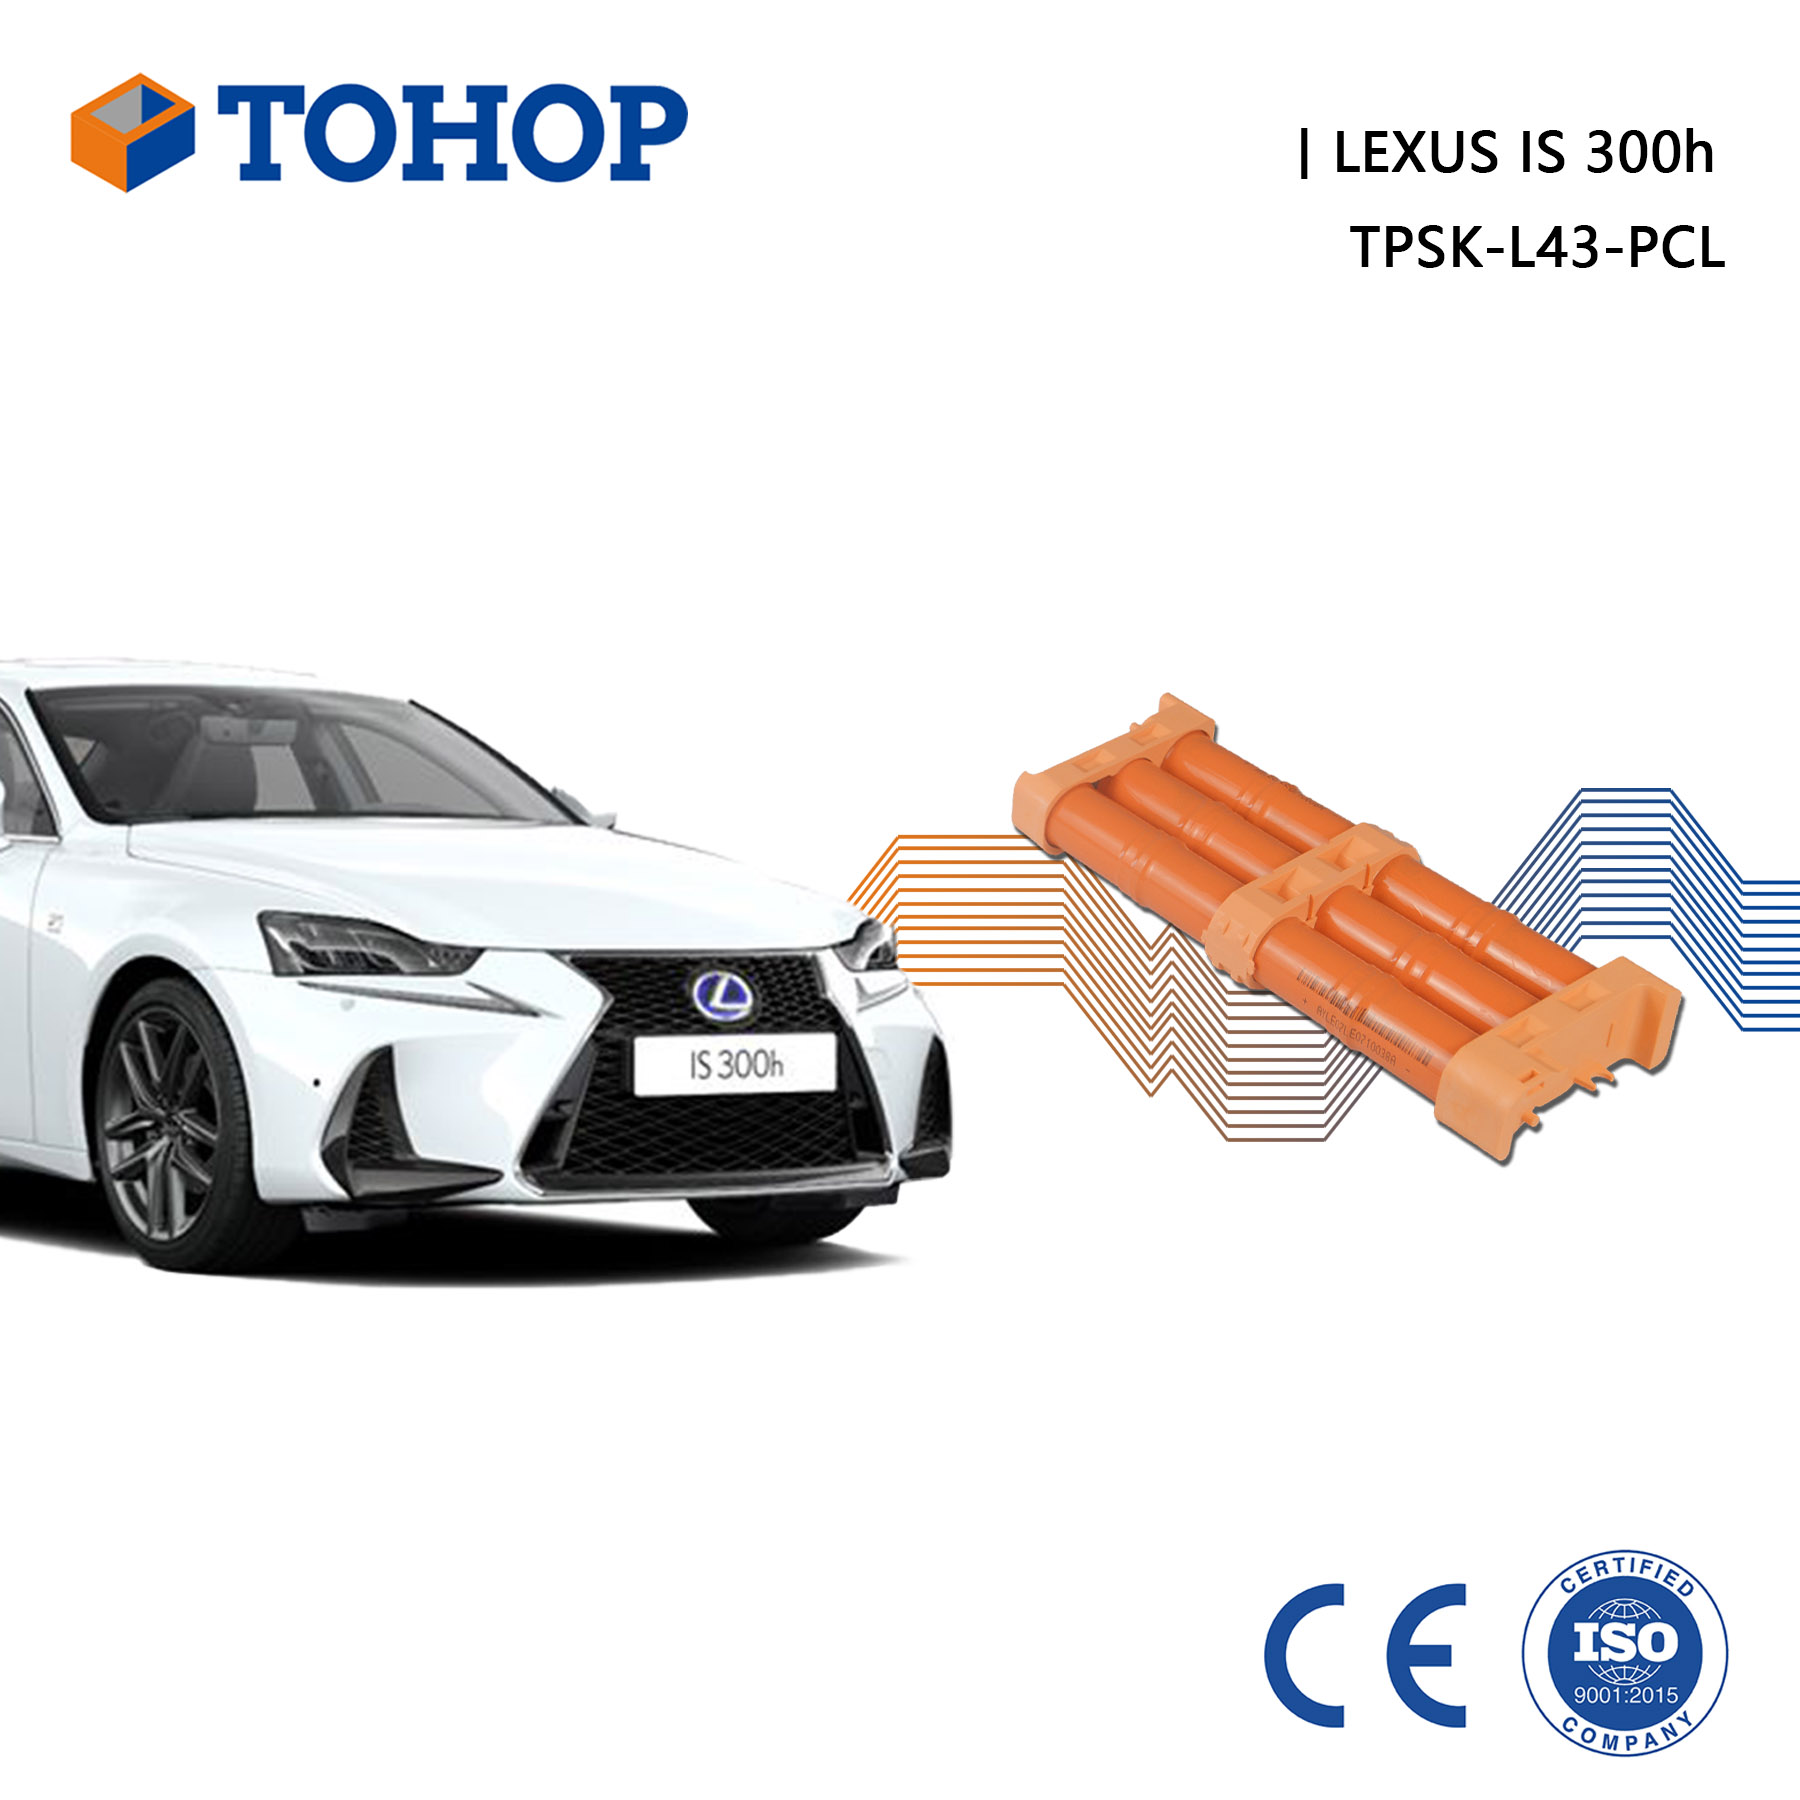 Batterie hybride pour Lexus IS300h nouvelle cellule de remplacement Nimh